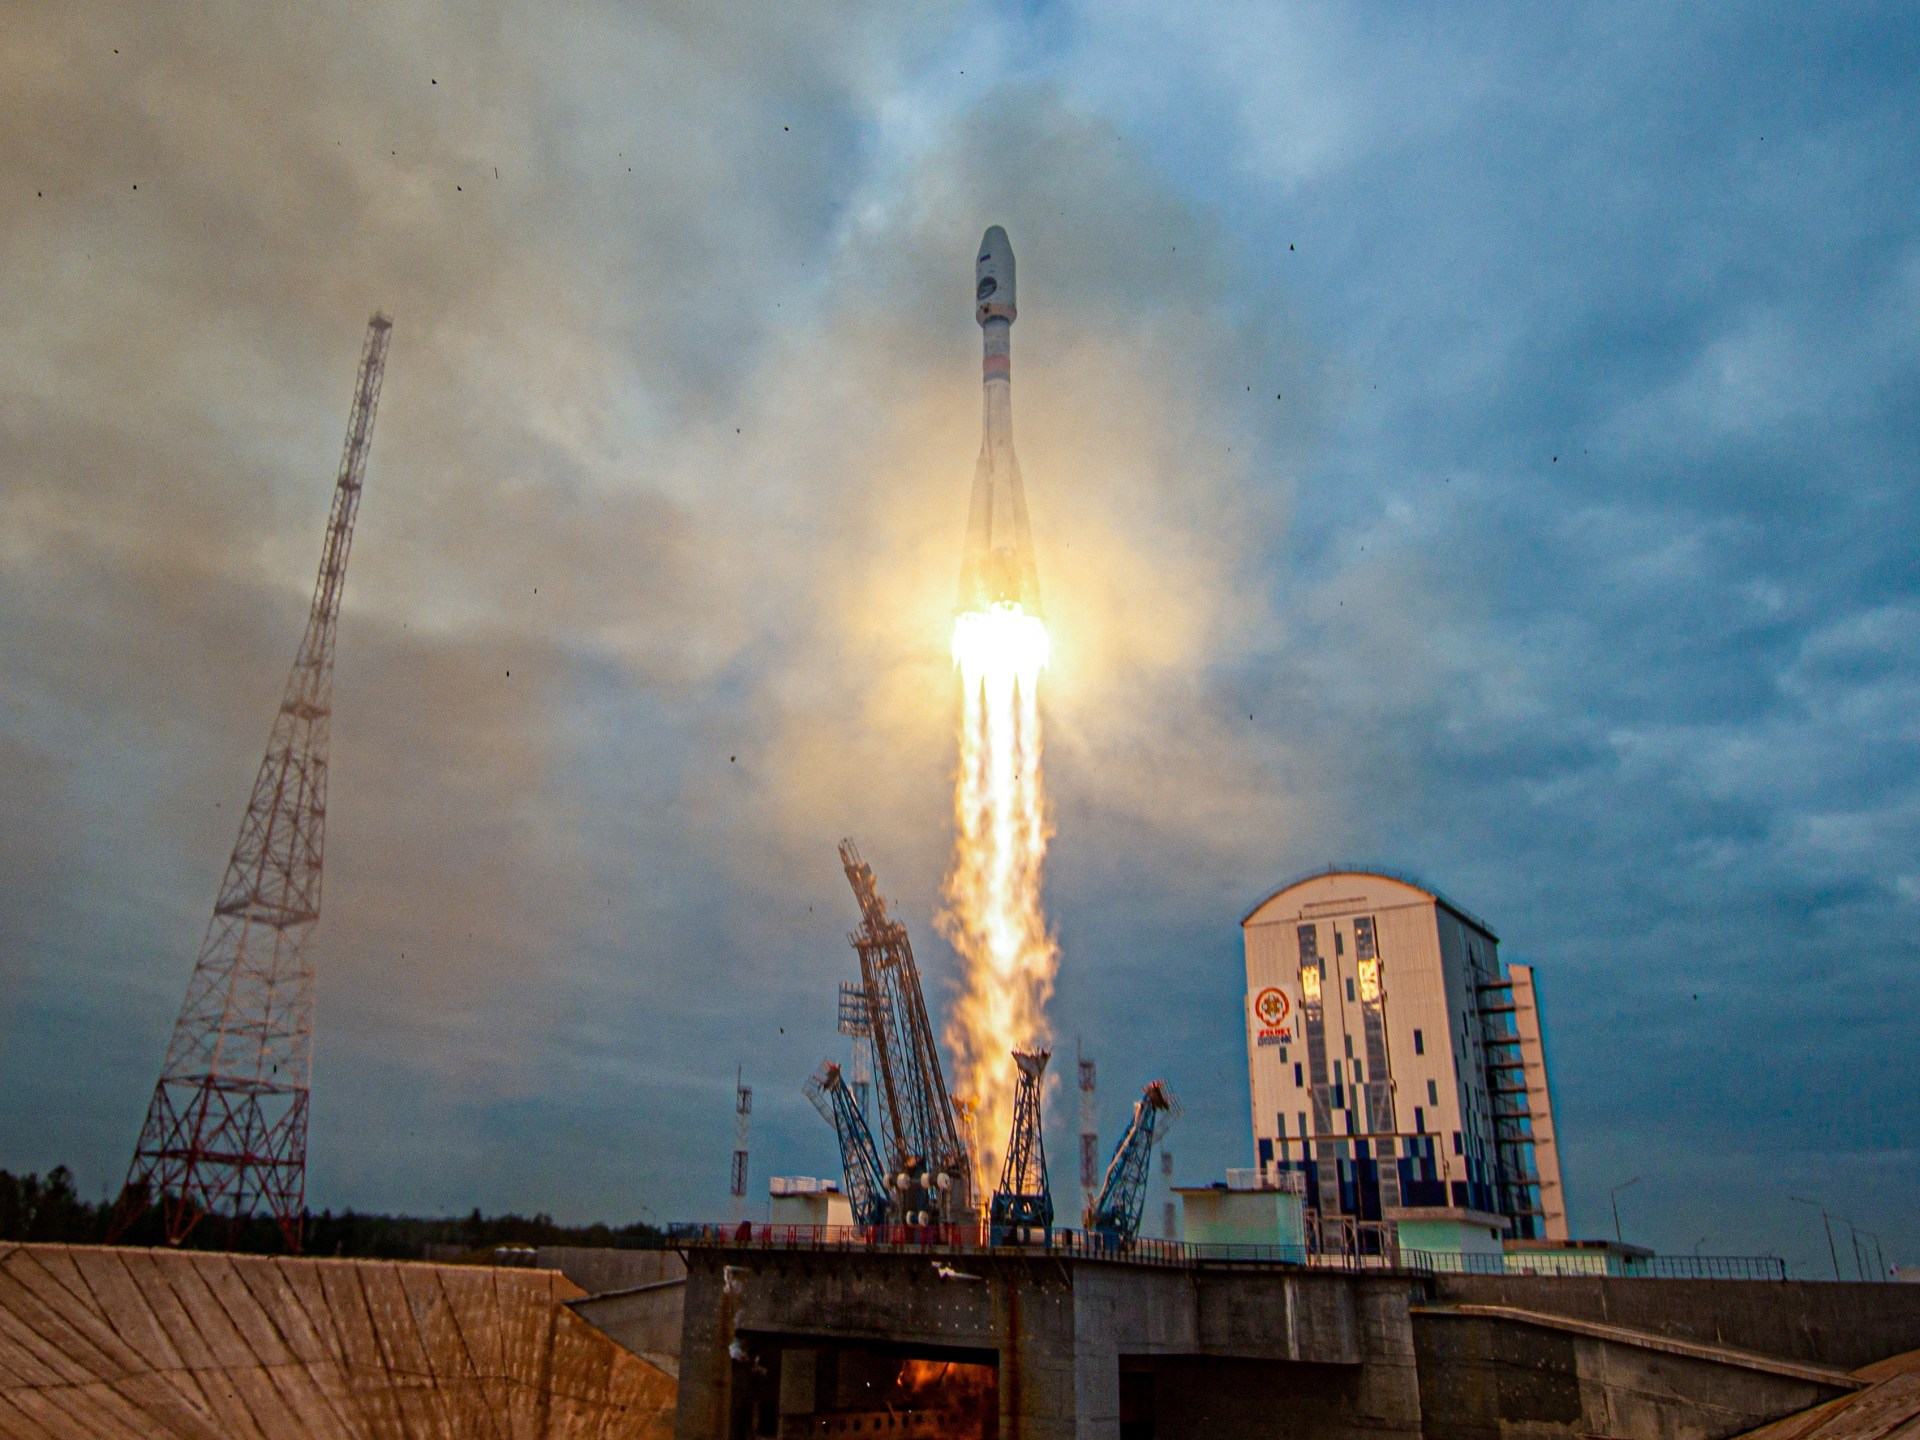 La nave espacial rusa alcanza la órbita lunar en preparación para el alunizaje |  Noticias espaciales